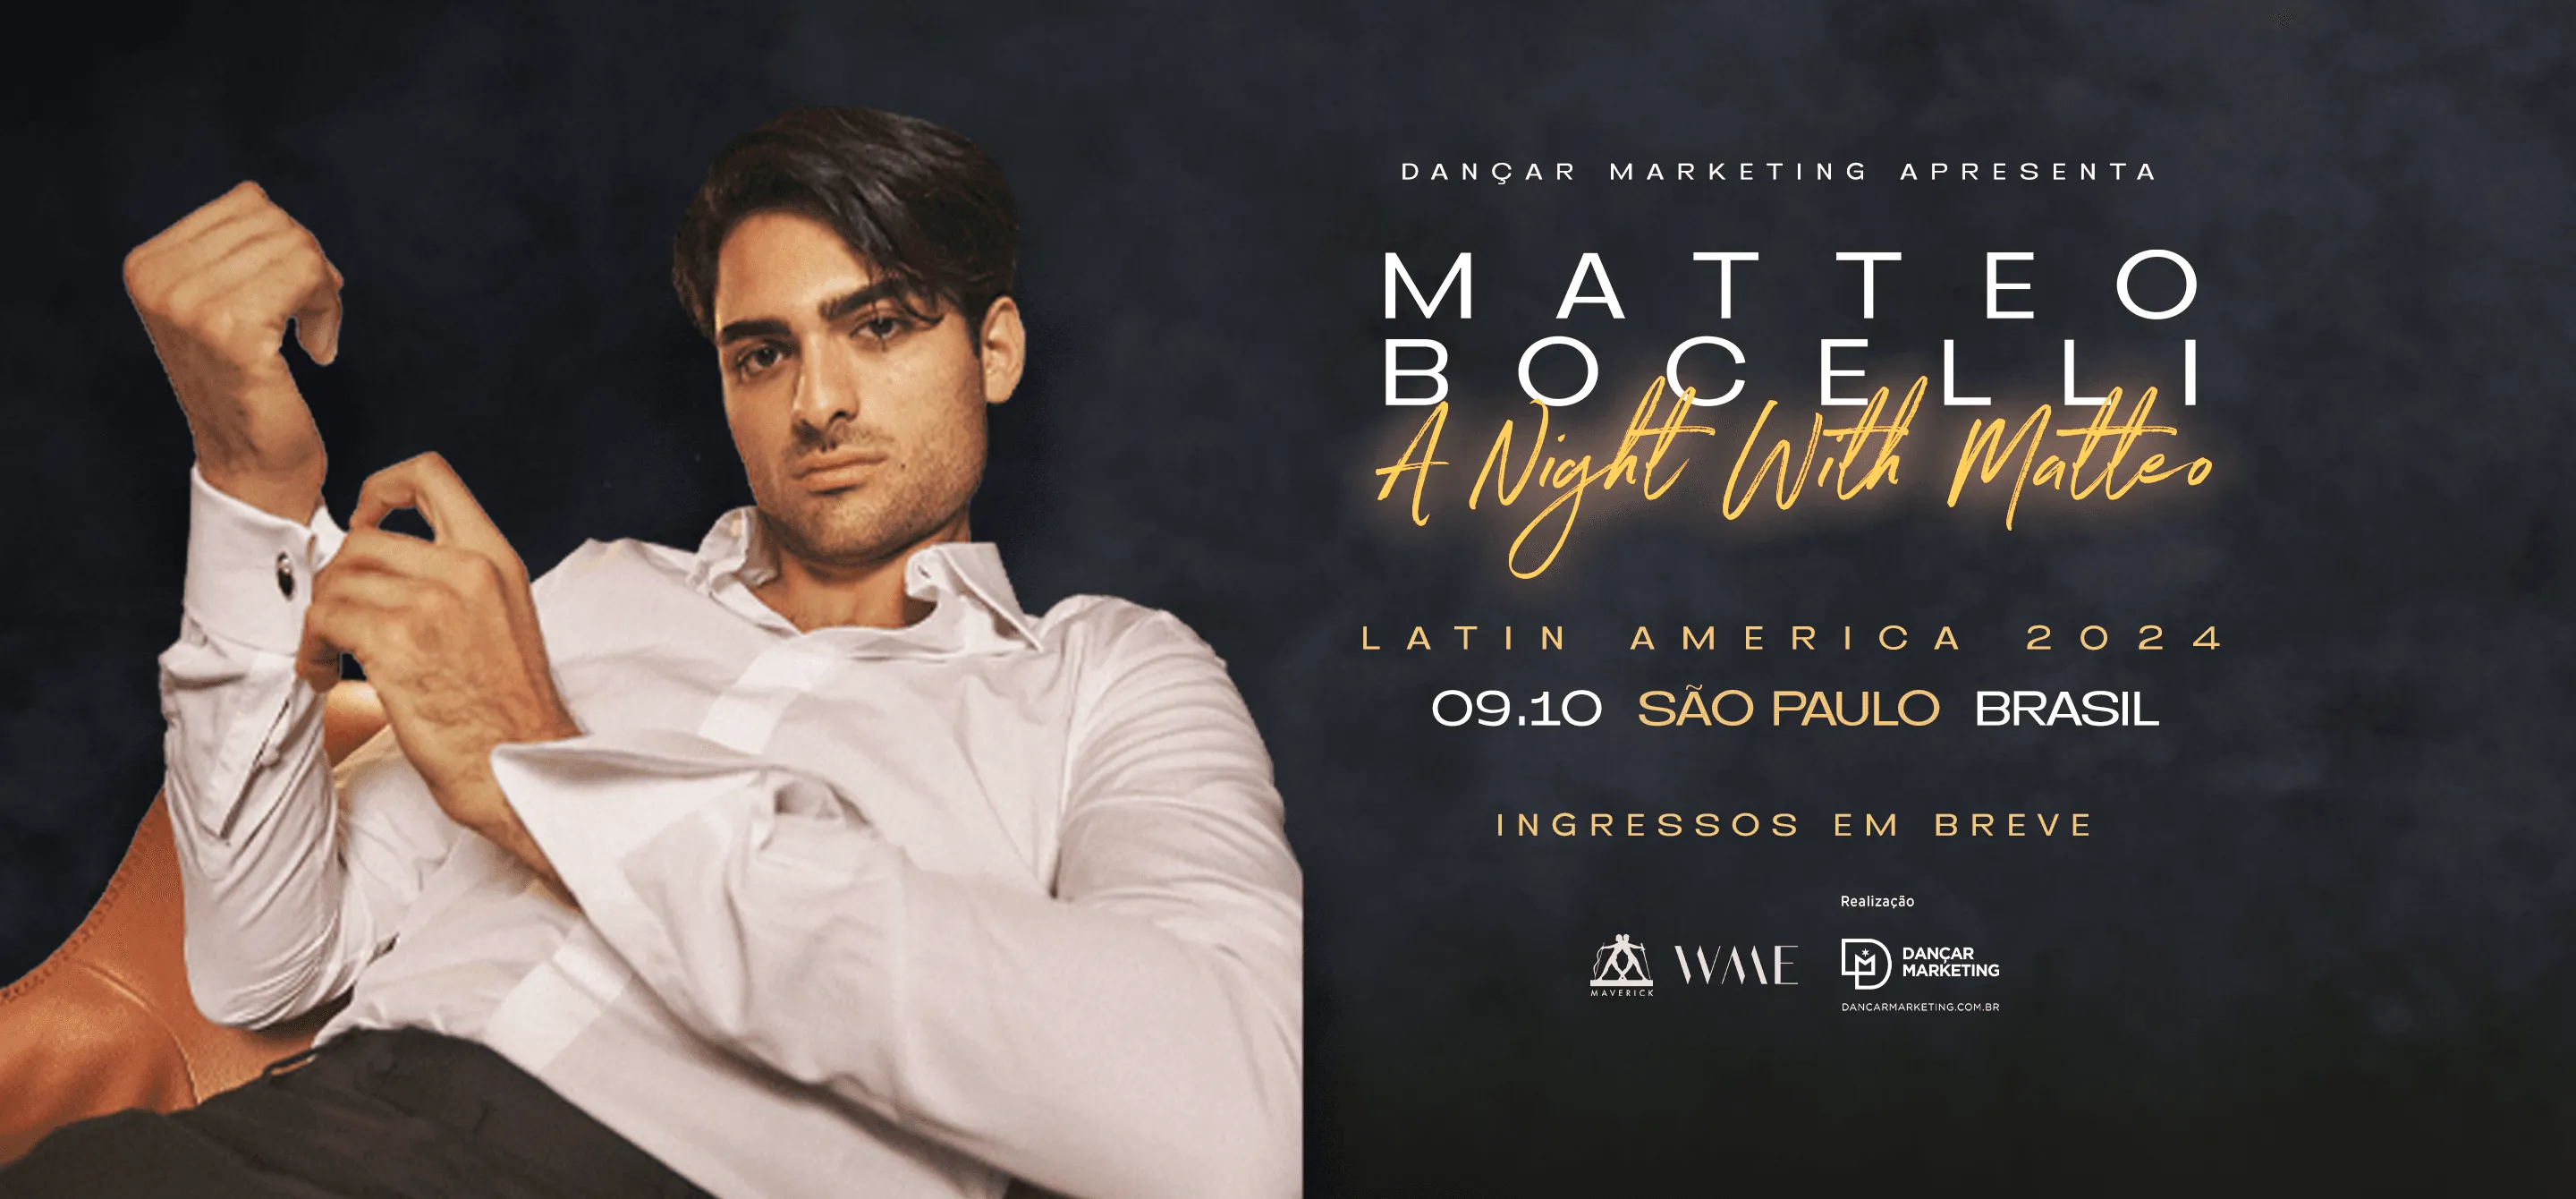 Imagem de divulgação da apresentação "Uma noite com Matteo". O cantor está com uma camisa branca, abotoando a manga. Ele é moreno e tem cabelos escuros.